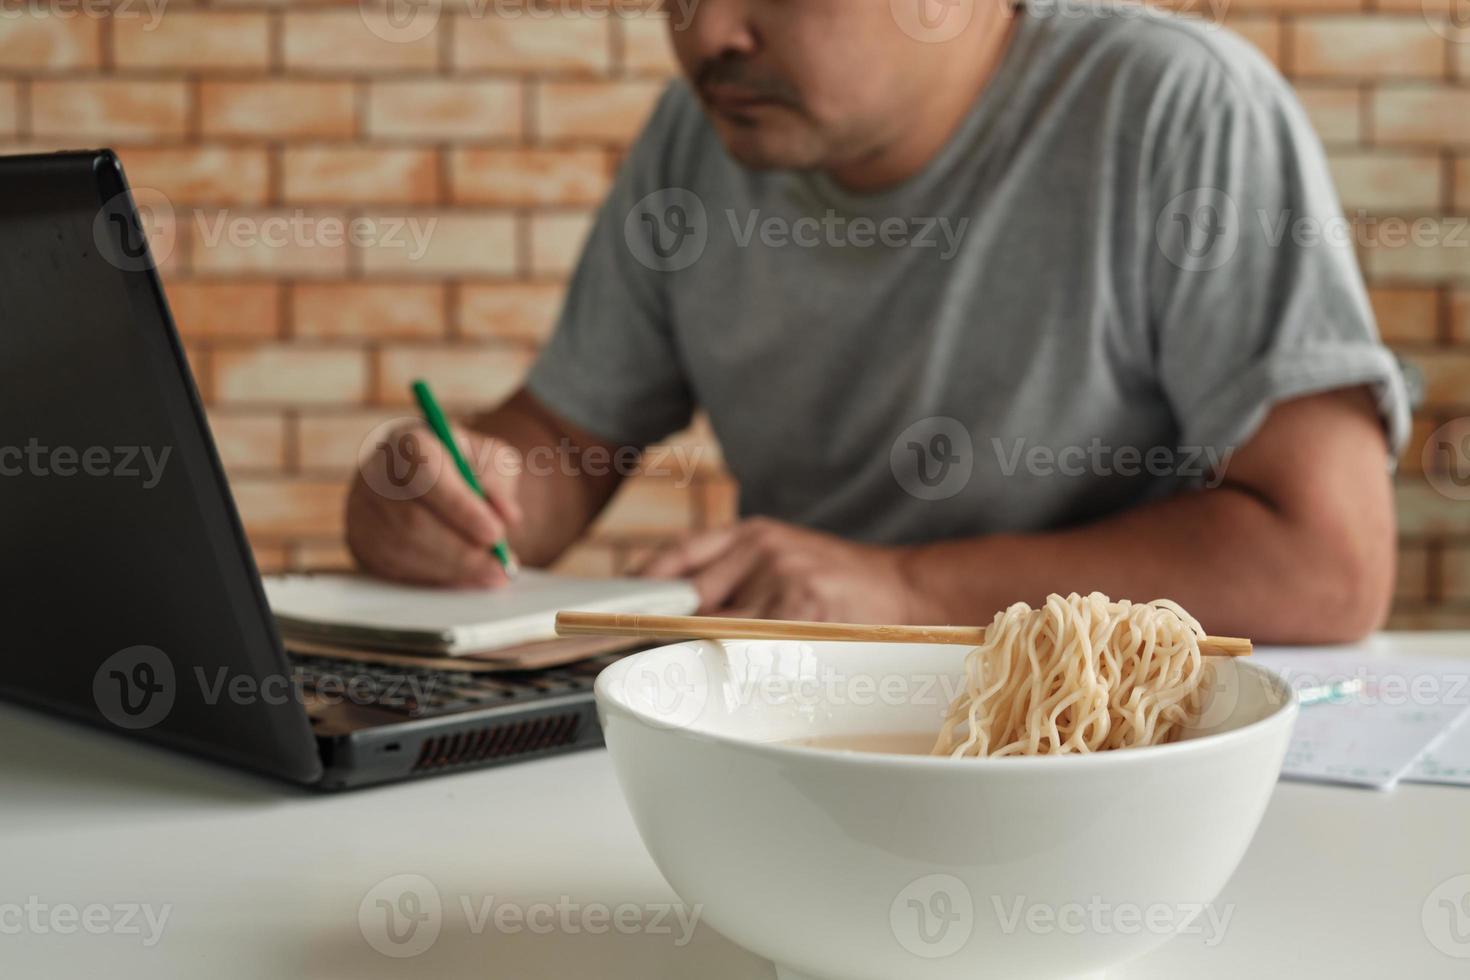 trabalhador tailandês do sexo masculino ocupado trabalhando com laptop, use os pauzinhos para comer macarrão instantâneo apressadamente durante o intervalo do almoço do escritório, porque é rápido, saboroso e barato. ao longo do tempo fast food asiático, estilo de vida pouco saudável. foto